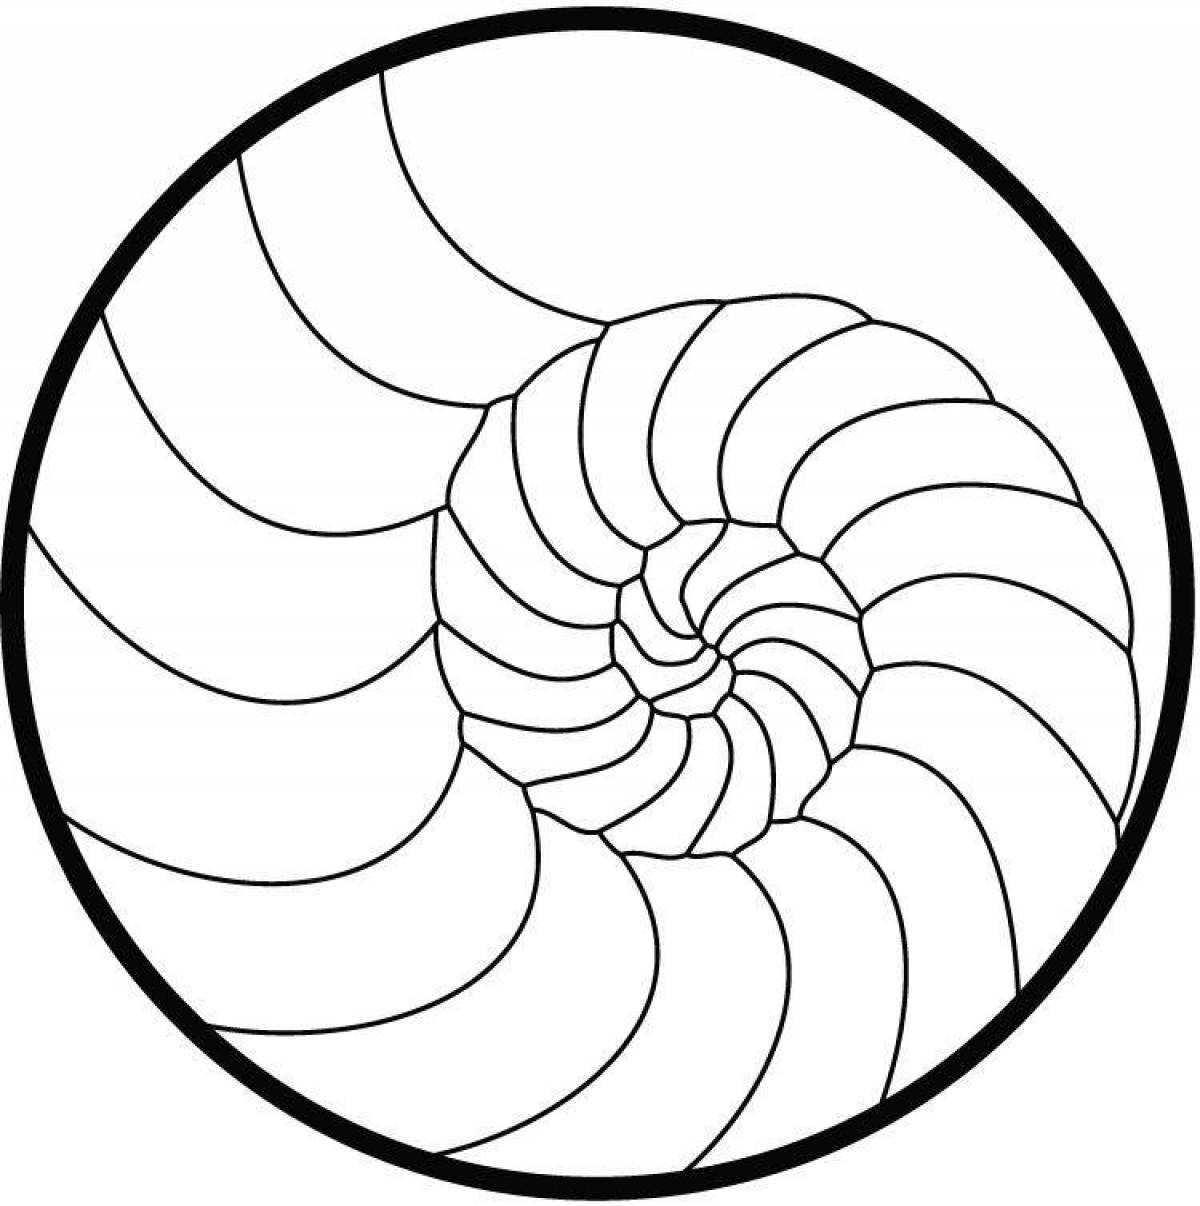 A breathtaking spiral portrait